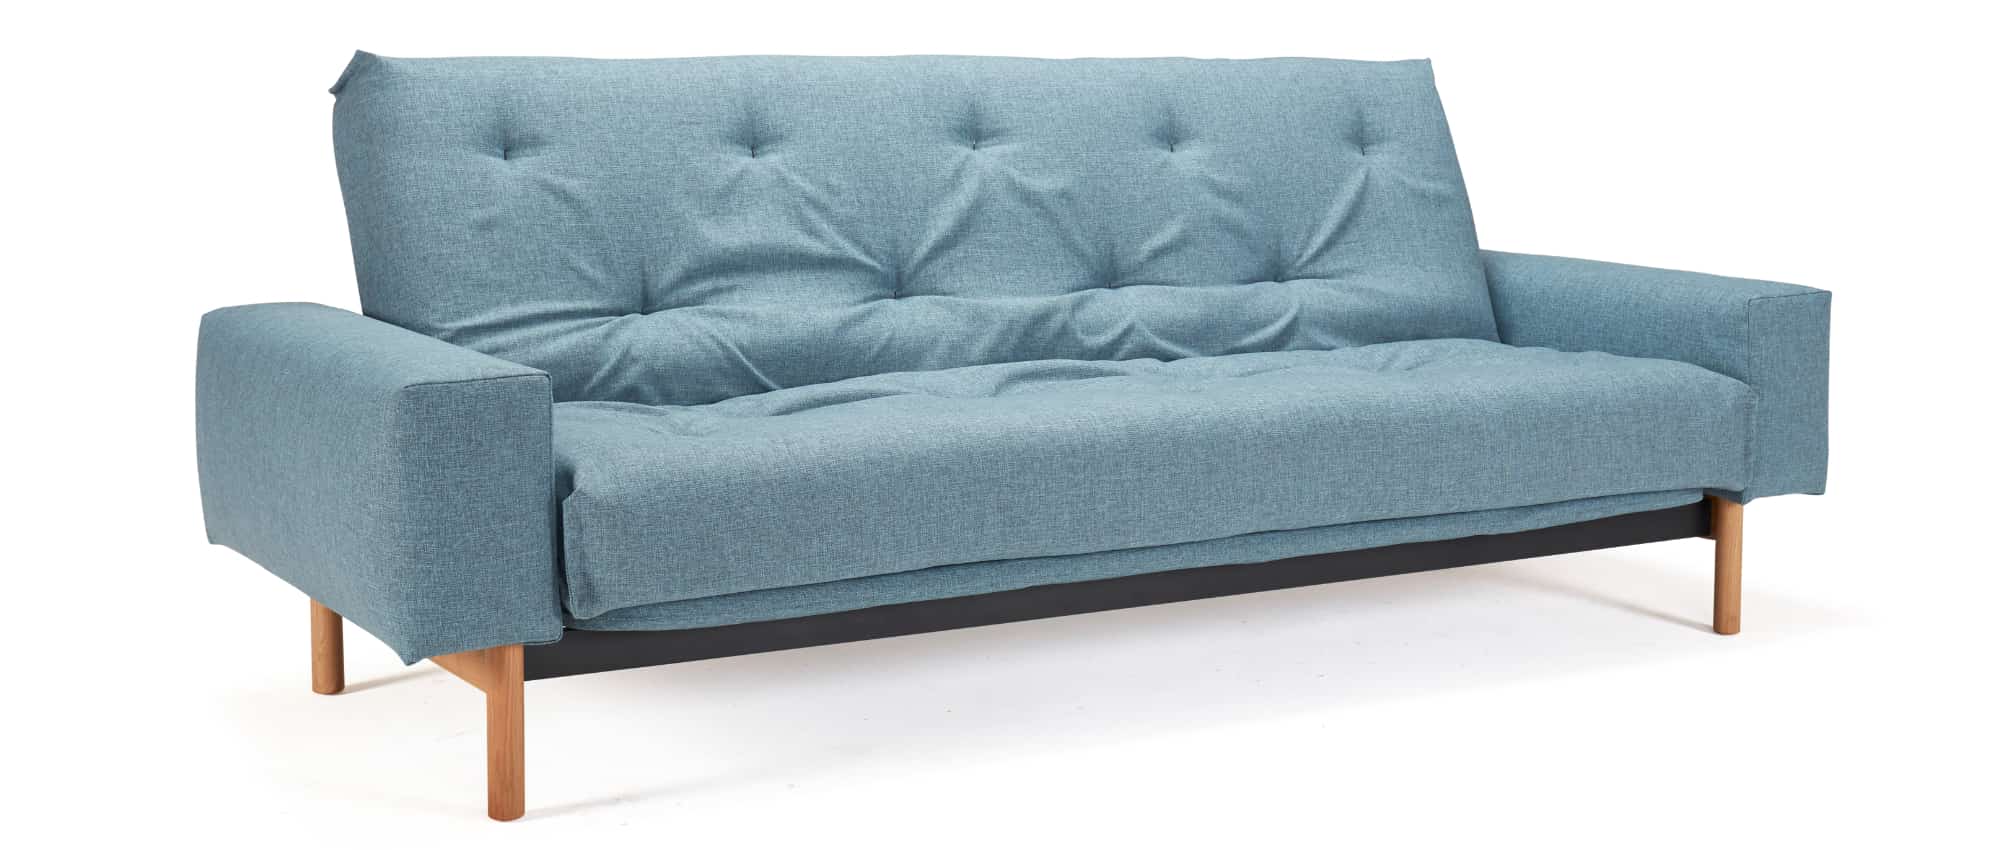 Schlafsofa MIMER von Innovation, Sofabett für jeden Tag, Dauerschläfer mit Matratze und Lattenrost - 140x200